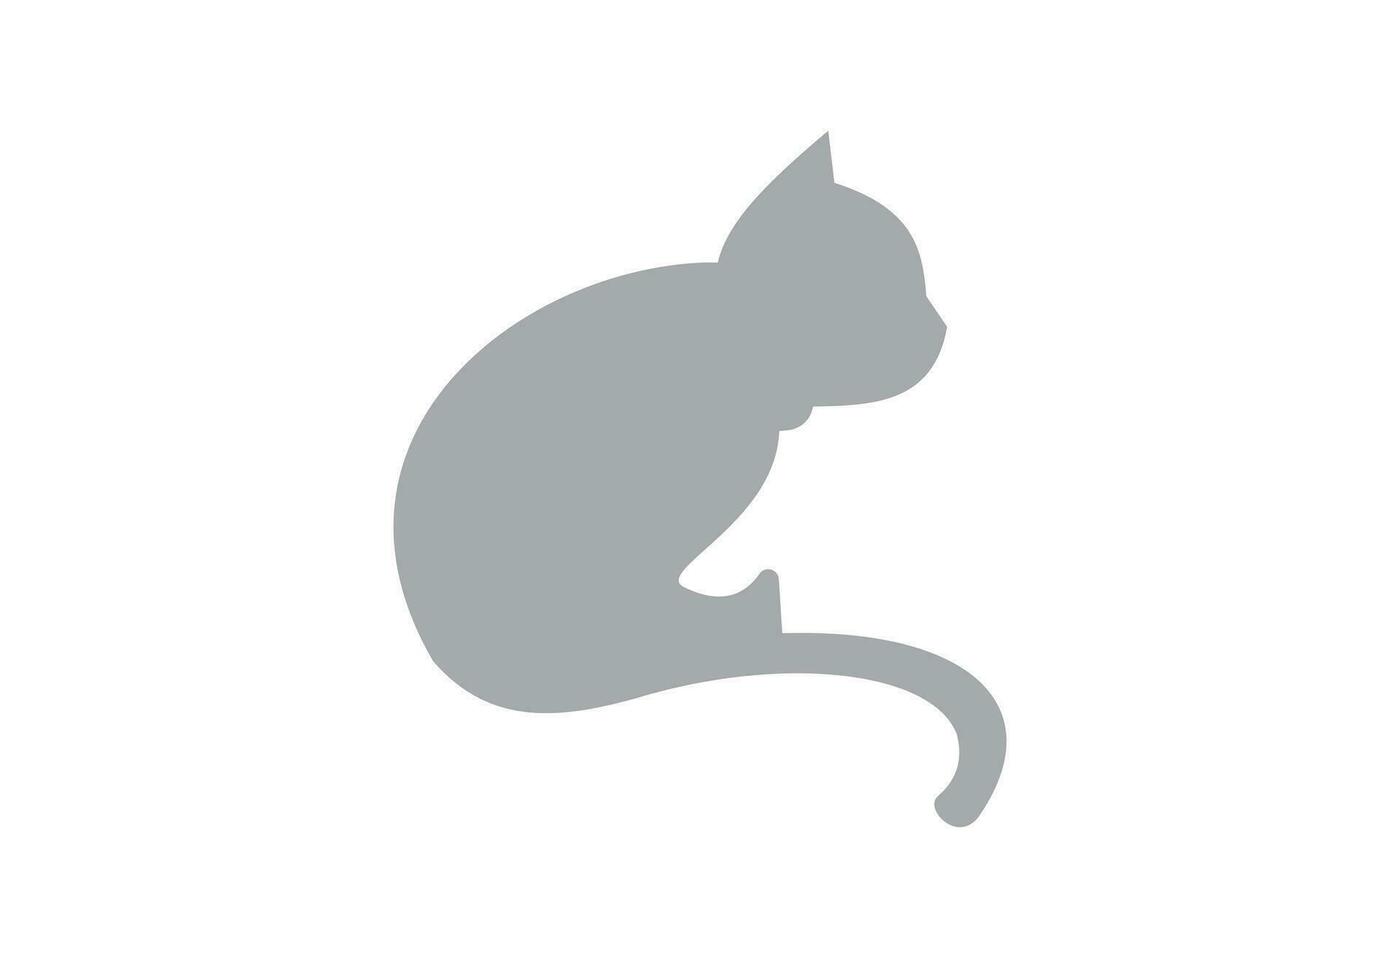 isto é uma gato logotipo Projeto para seu o negócio vetor